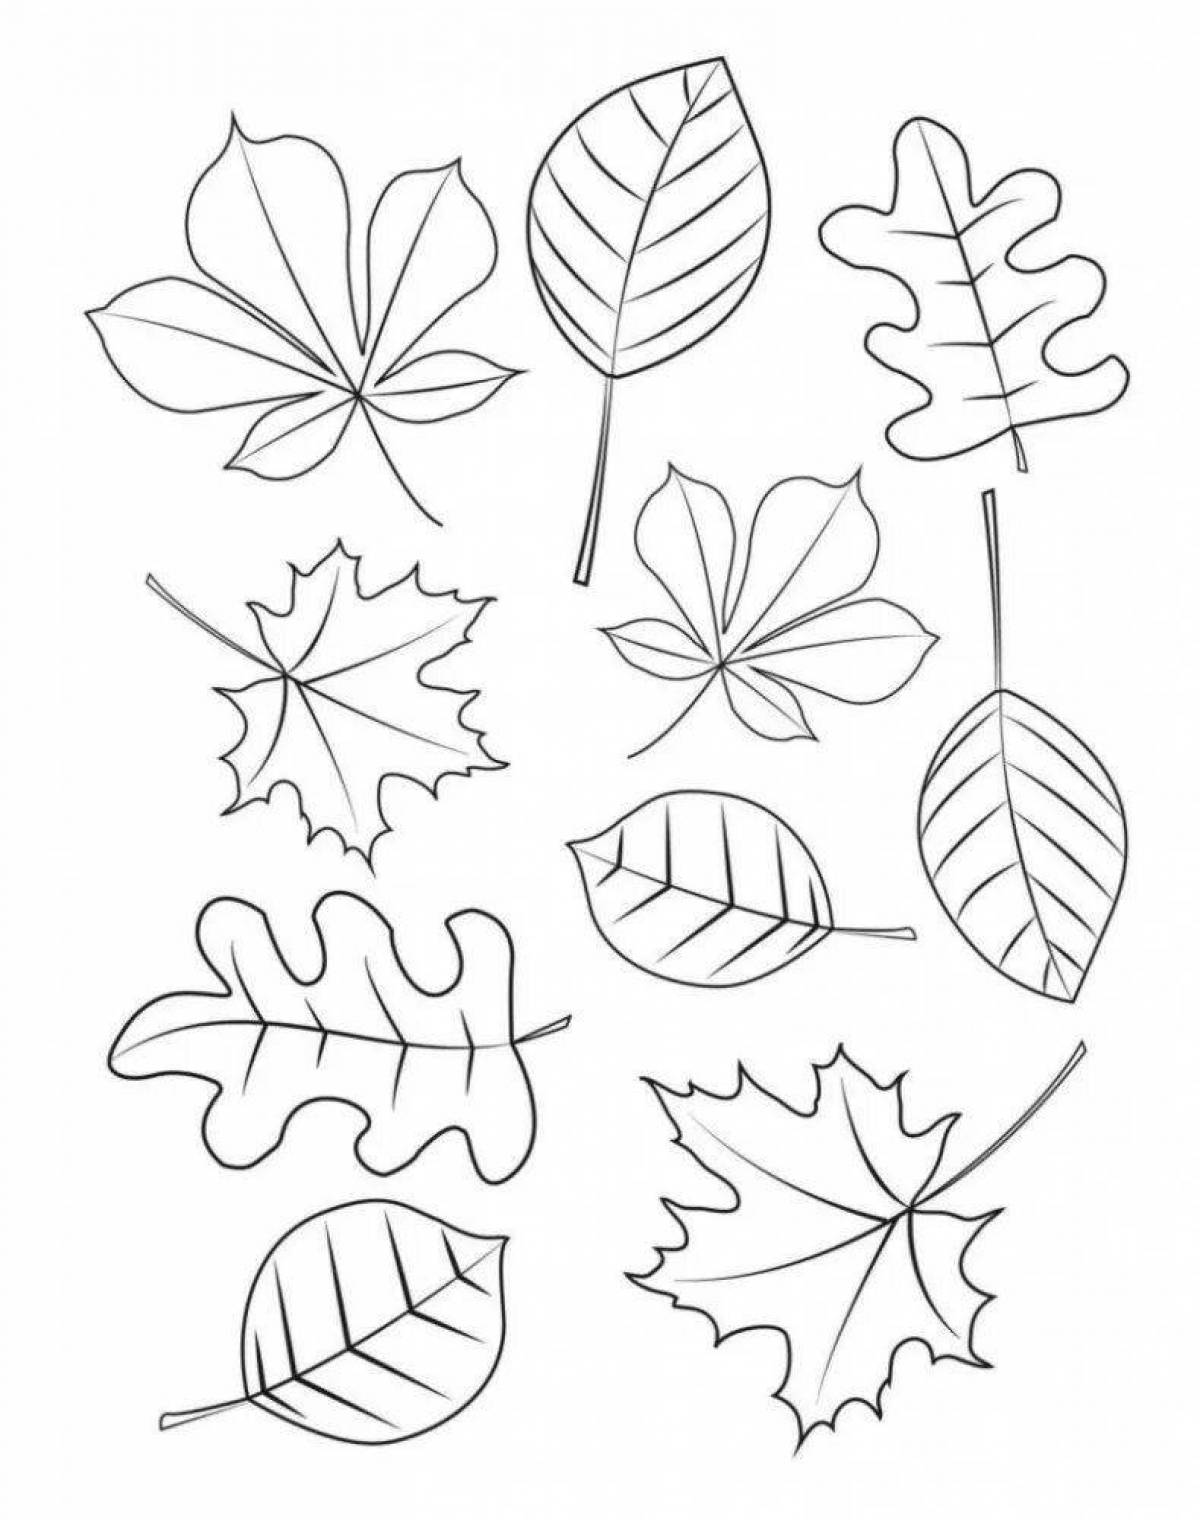 Раскраска экзотических листьев